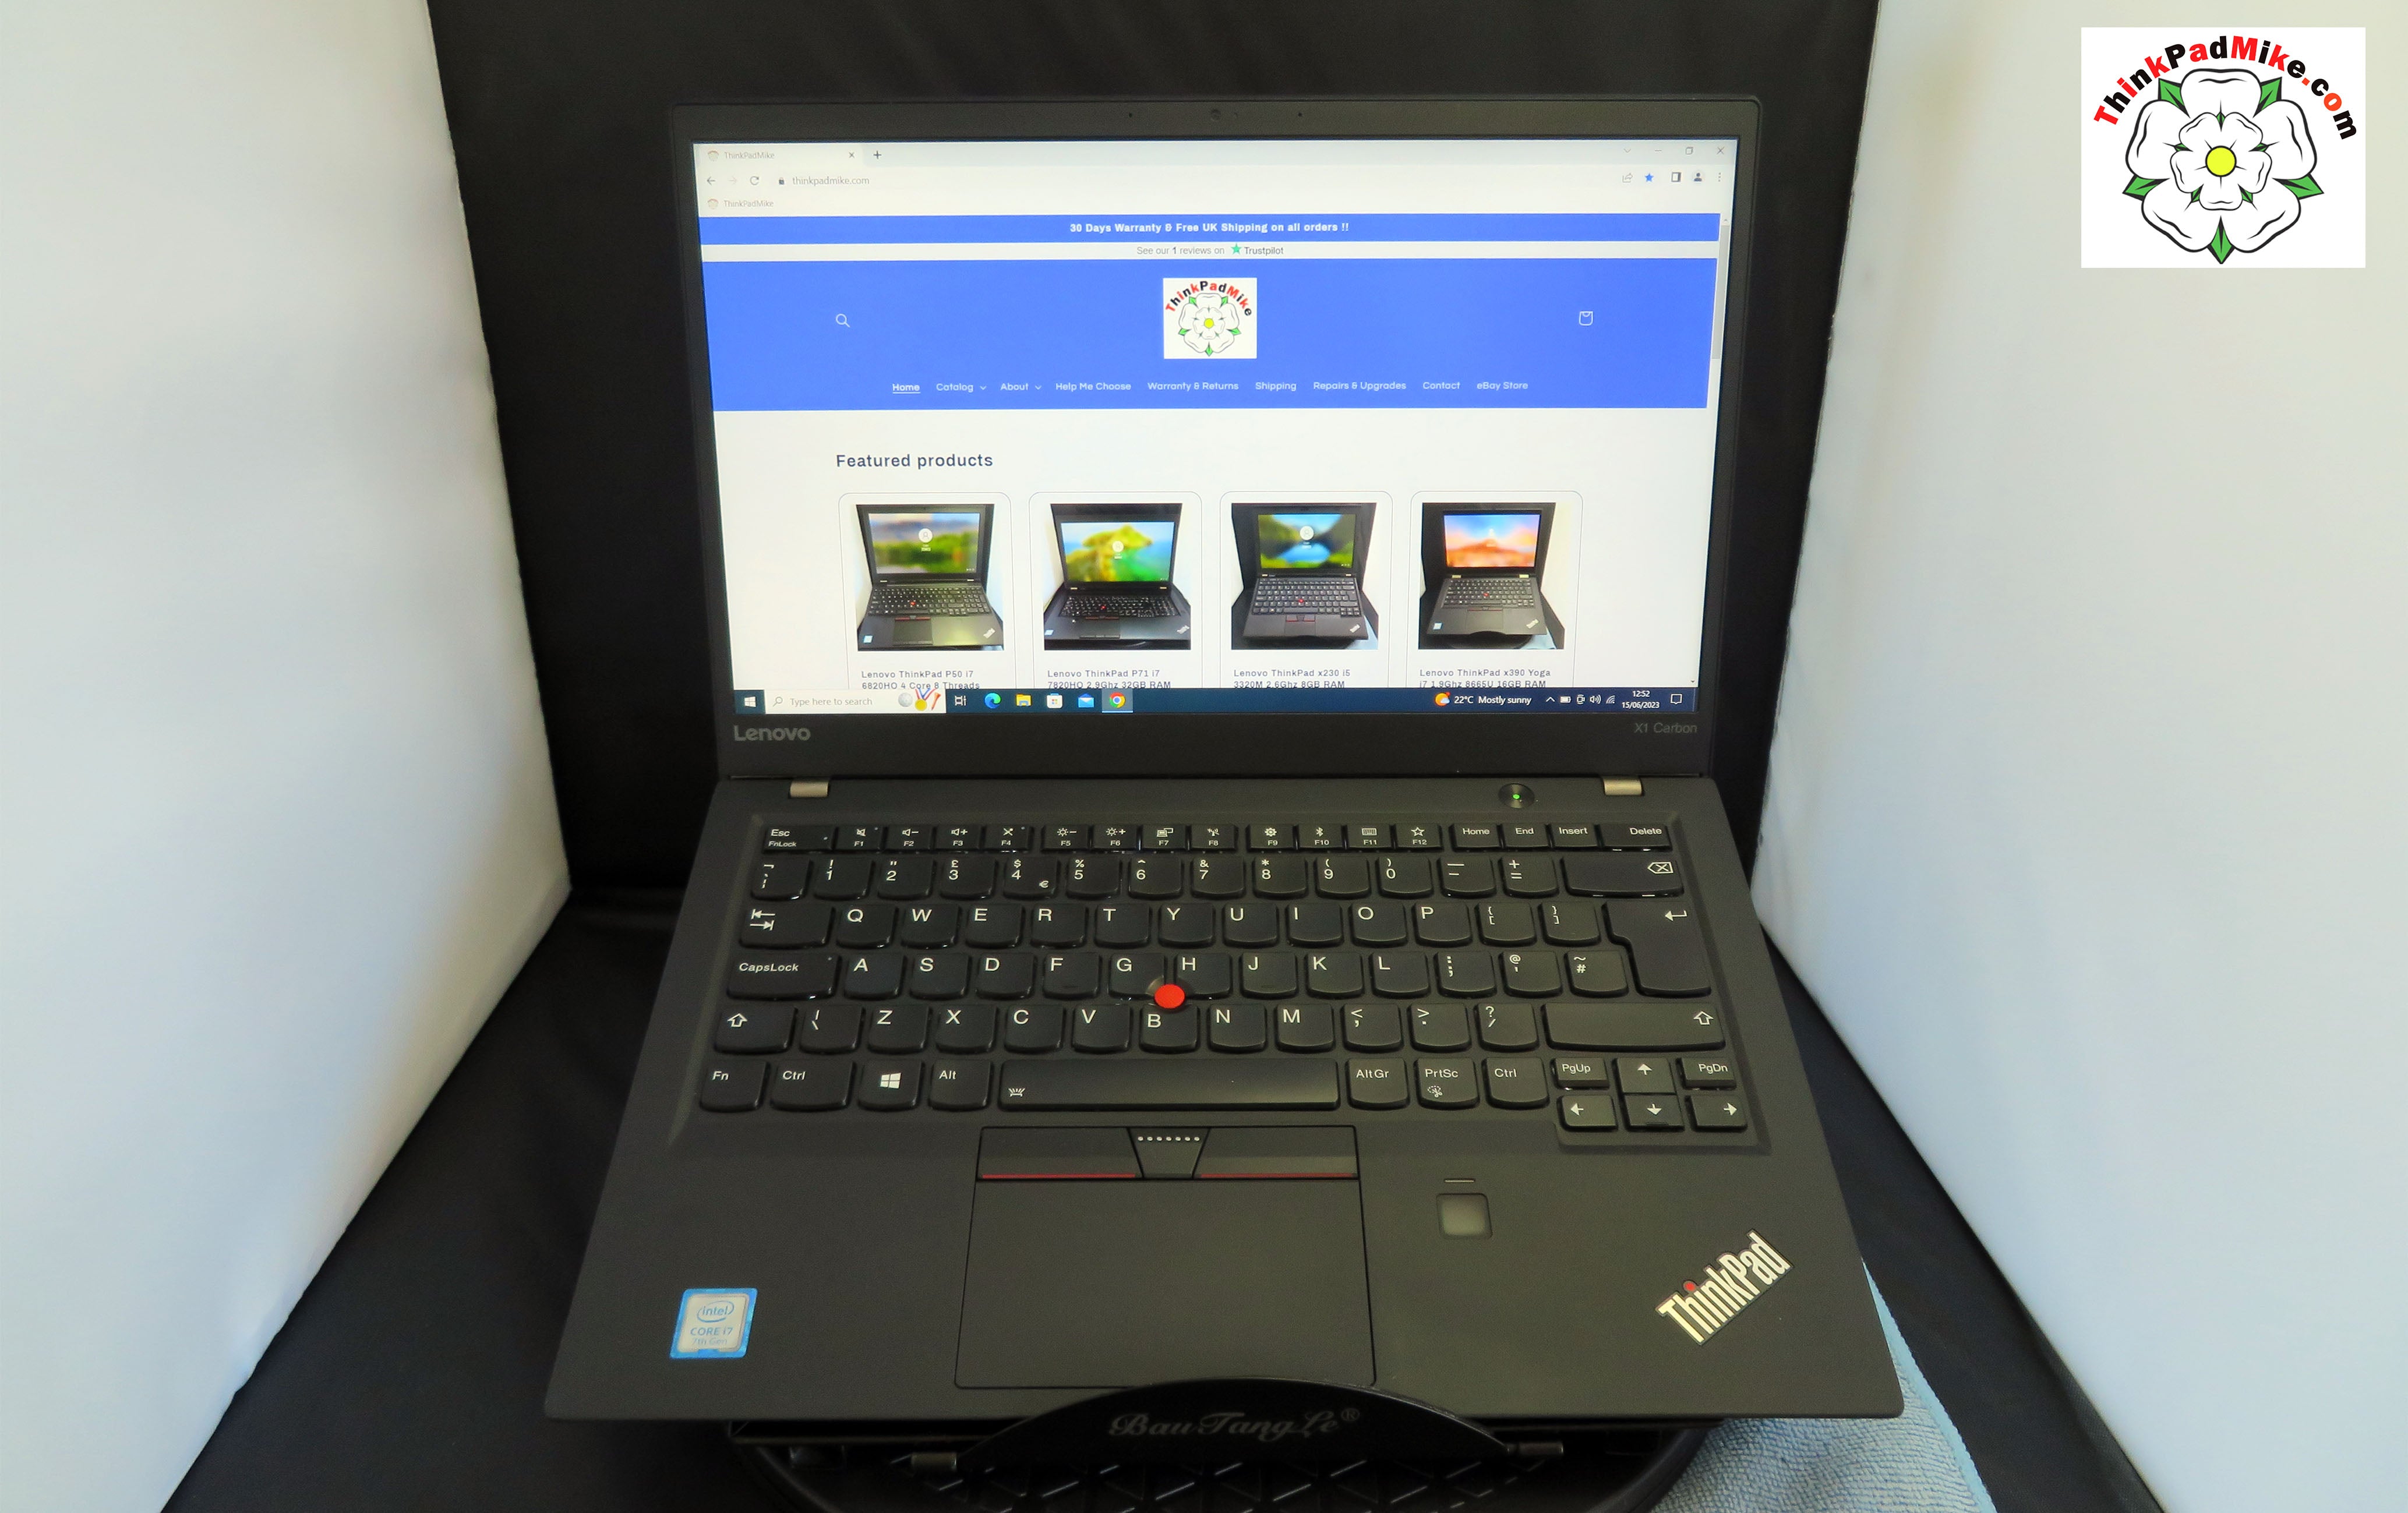 Lenovo ThinkPad x1 Carbon 5th Gen i7 7500U 2.7Ghz 8GB RAM 256GB